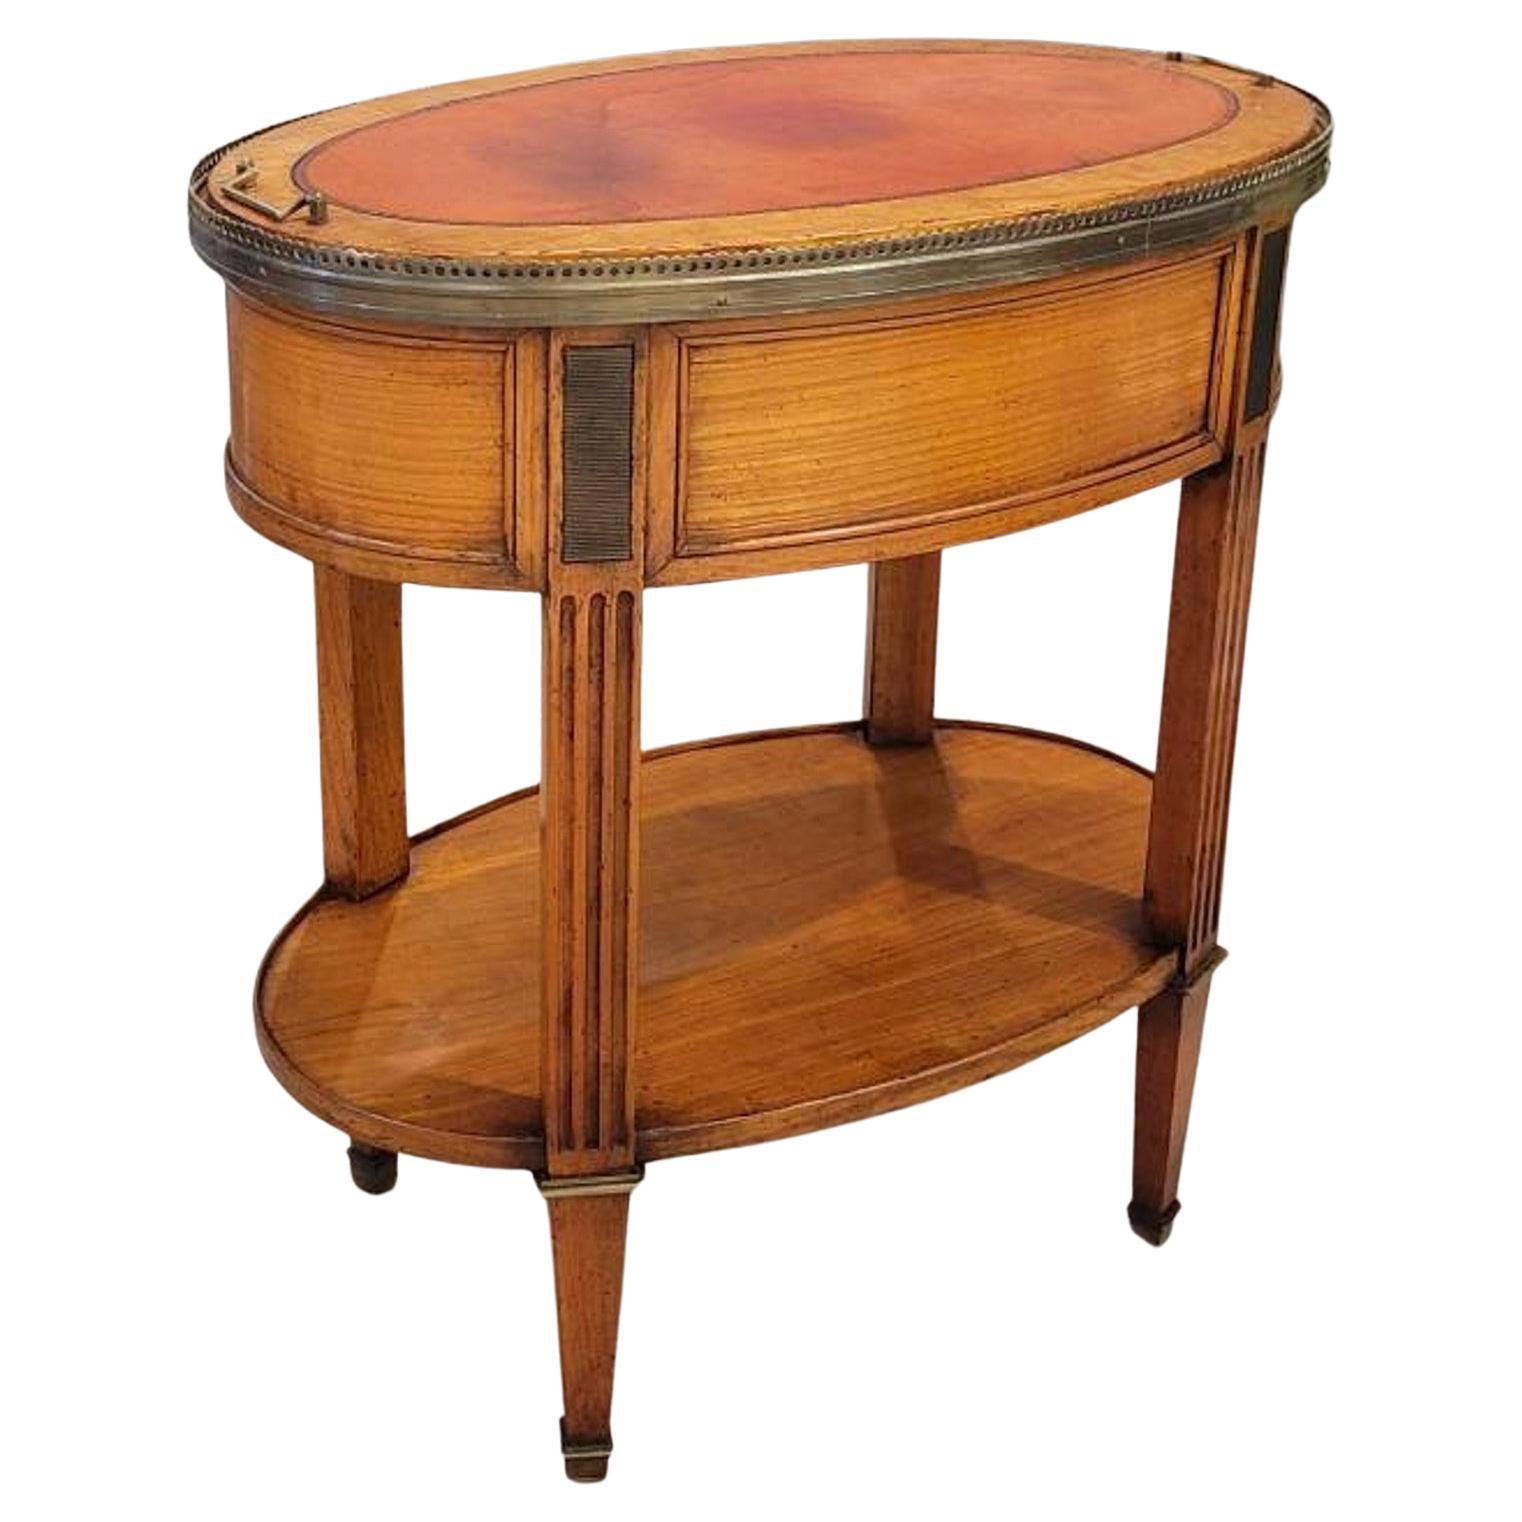 Table d'appoint en bois fruitier de style Louis XVI du 19e siècle